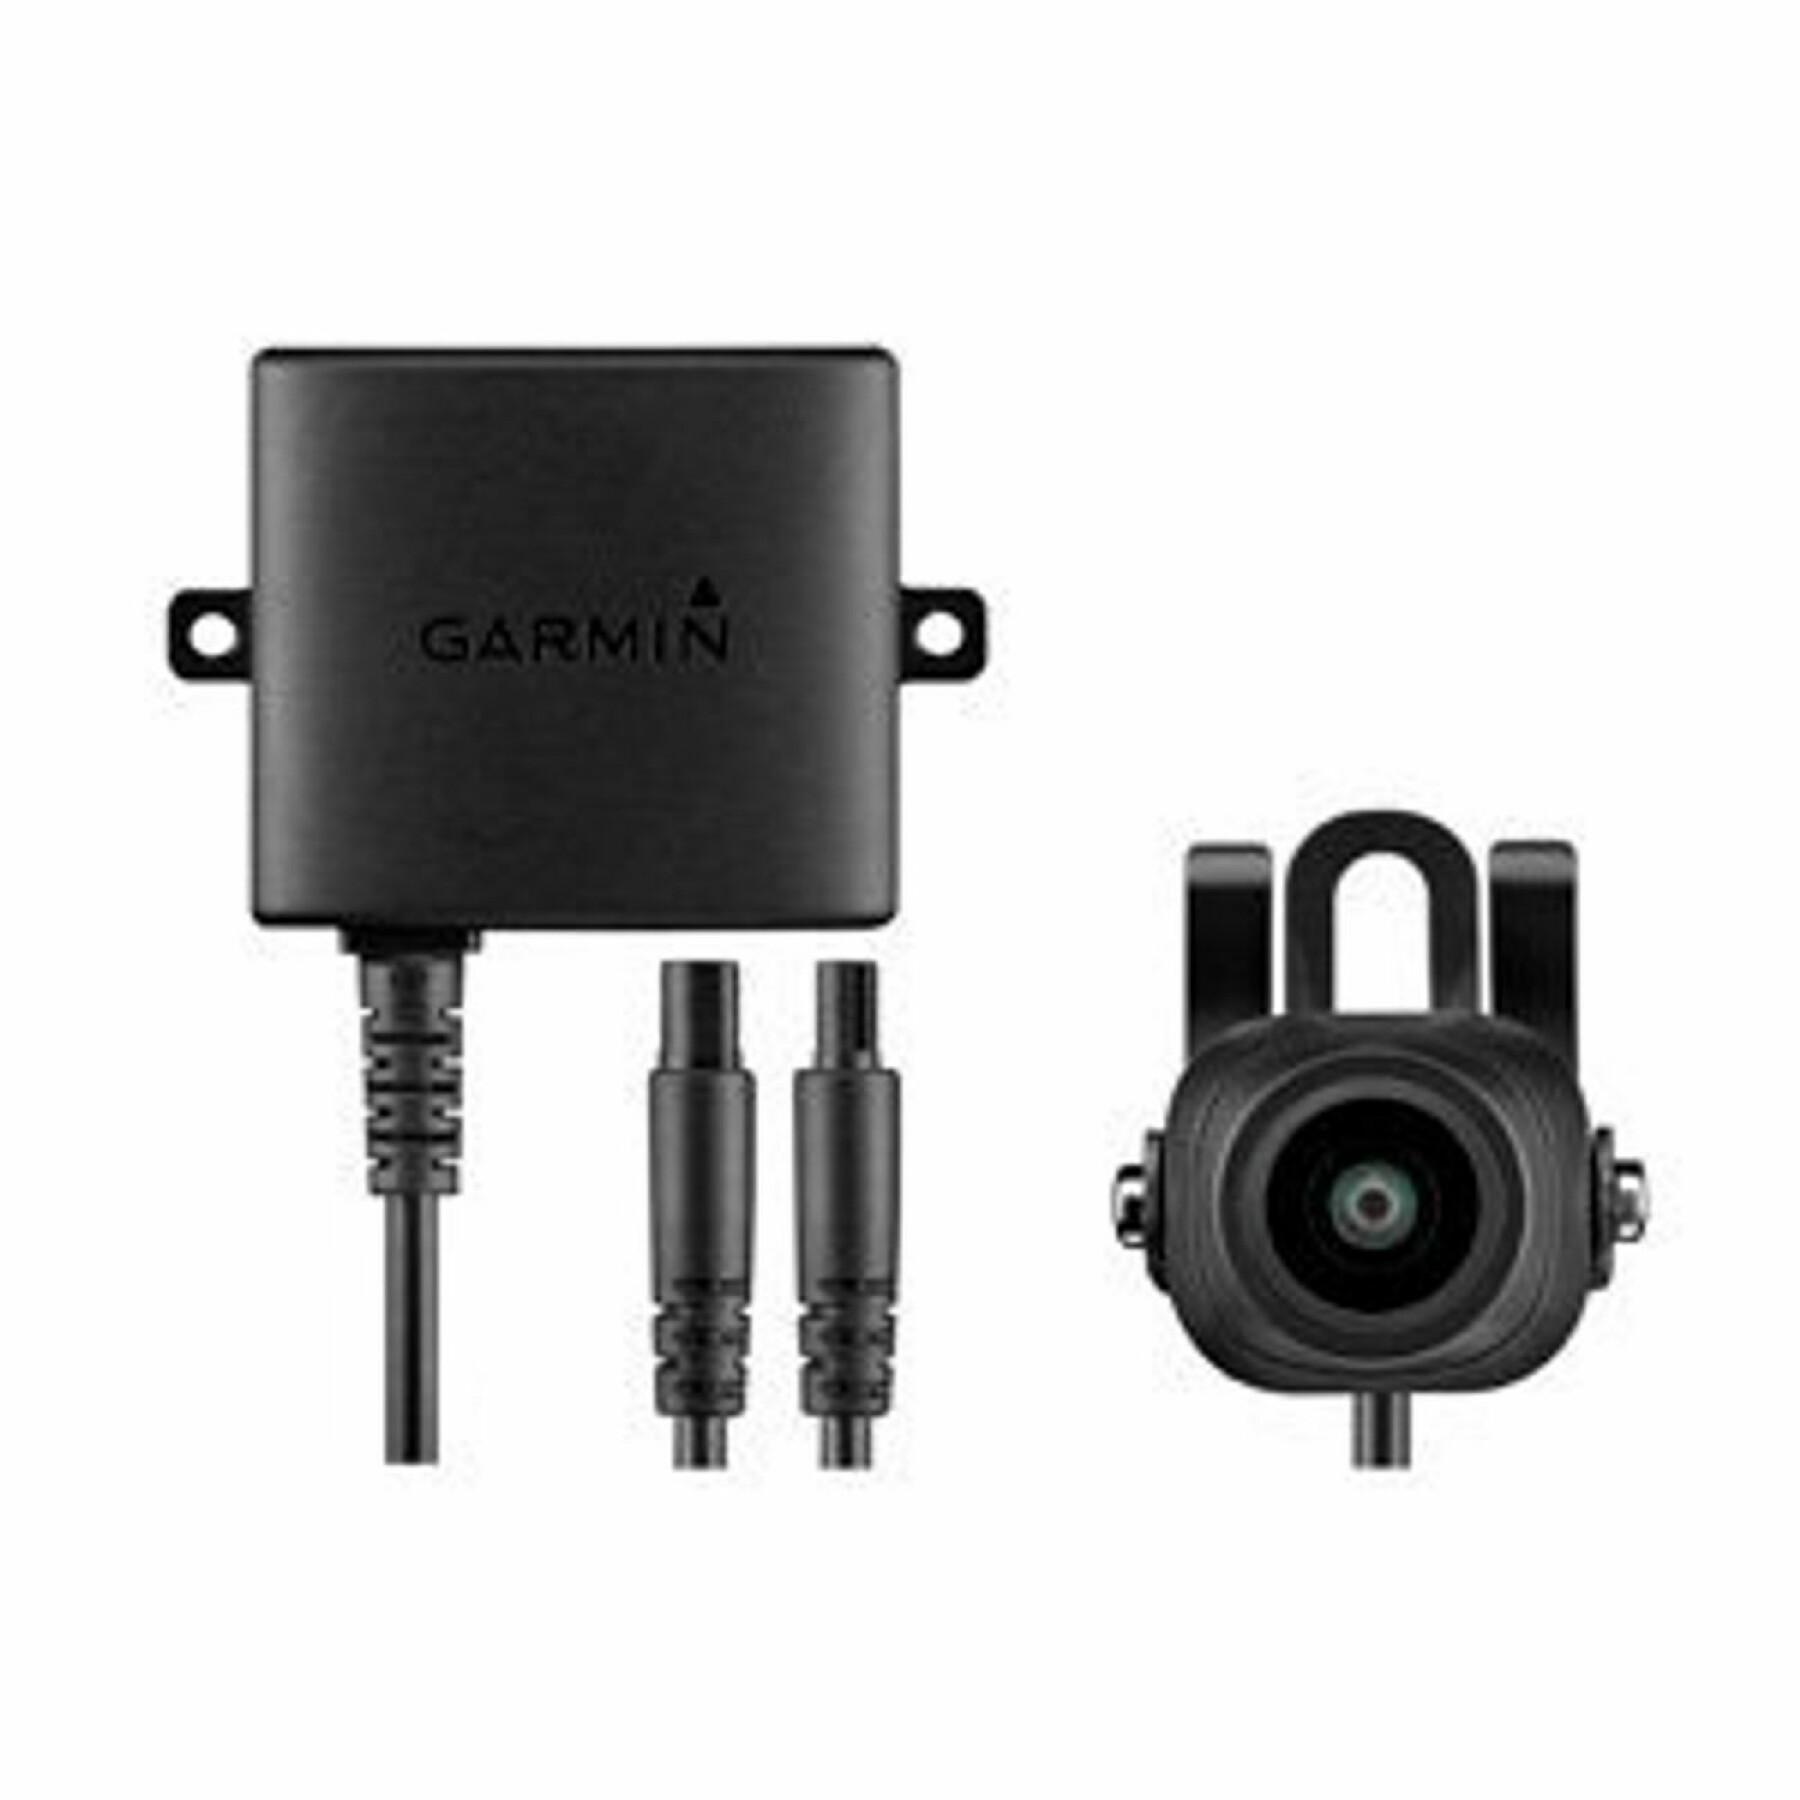 Ricevitore Garmin sans fil bc 30 / câble du récepteur info-trafic et câble allume-cigare